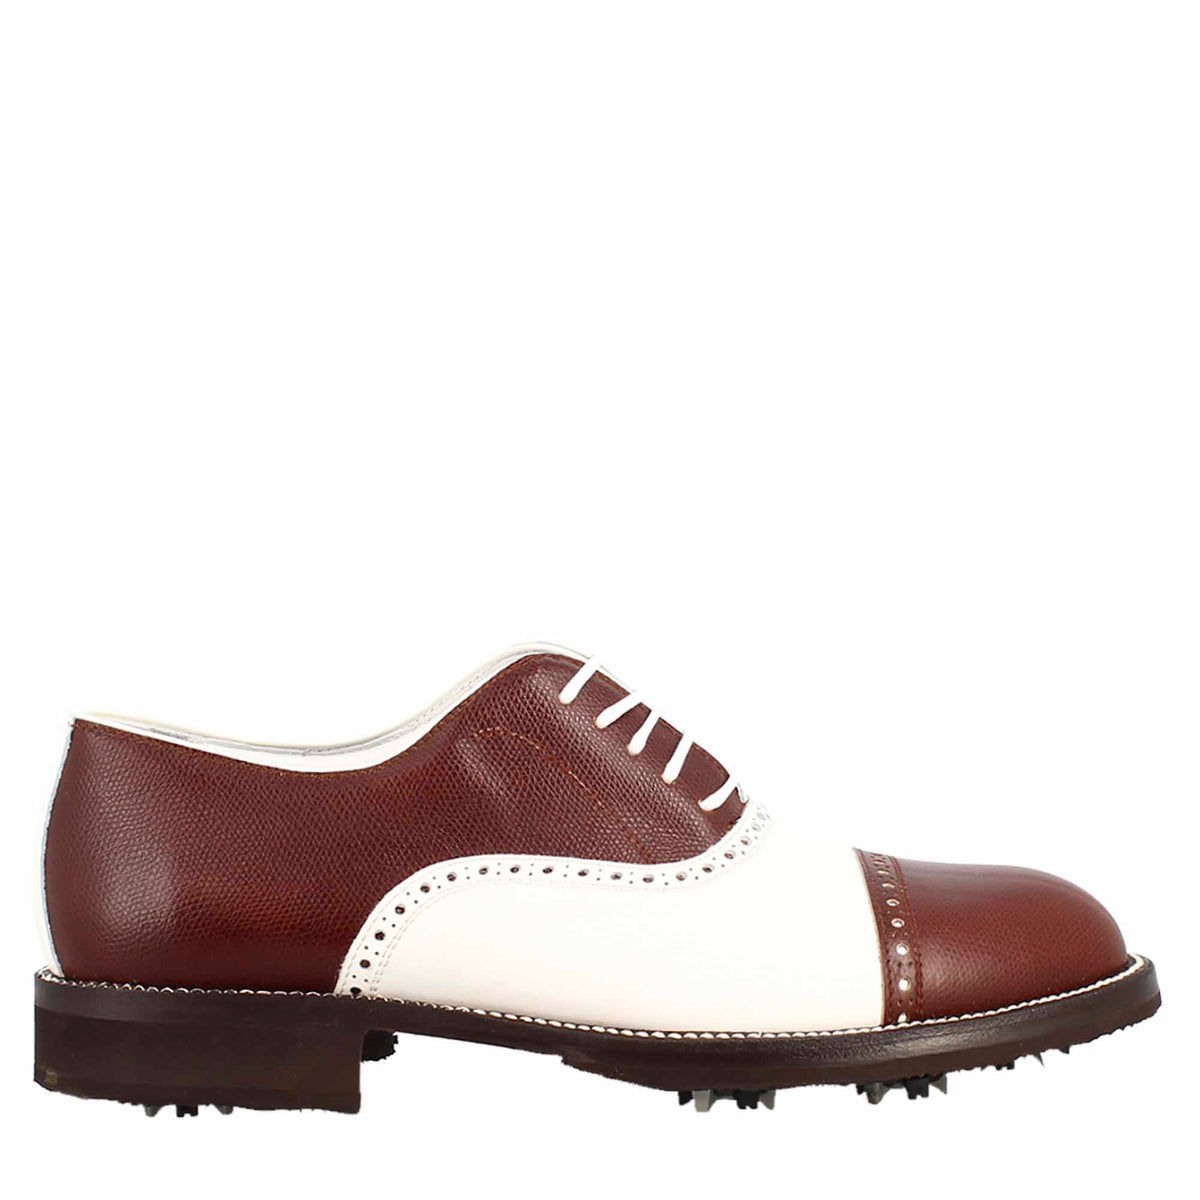 Chaussures de golf LRP pour femmes, fabriquées à la main, en cuir blanc et marron, avec détails de broderie